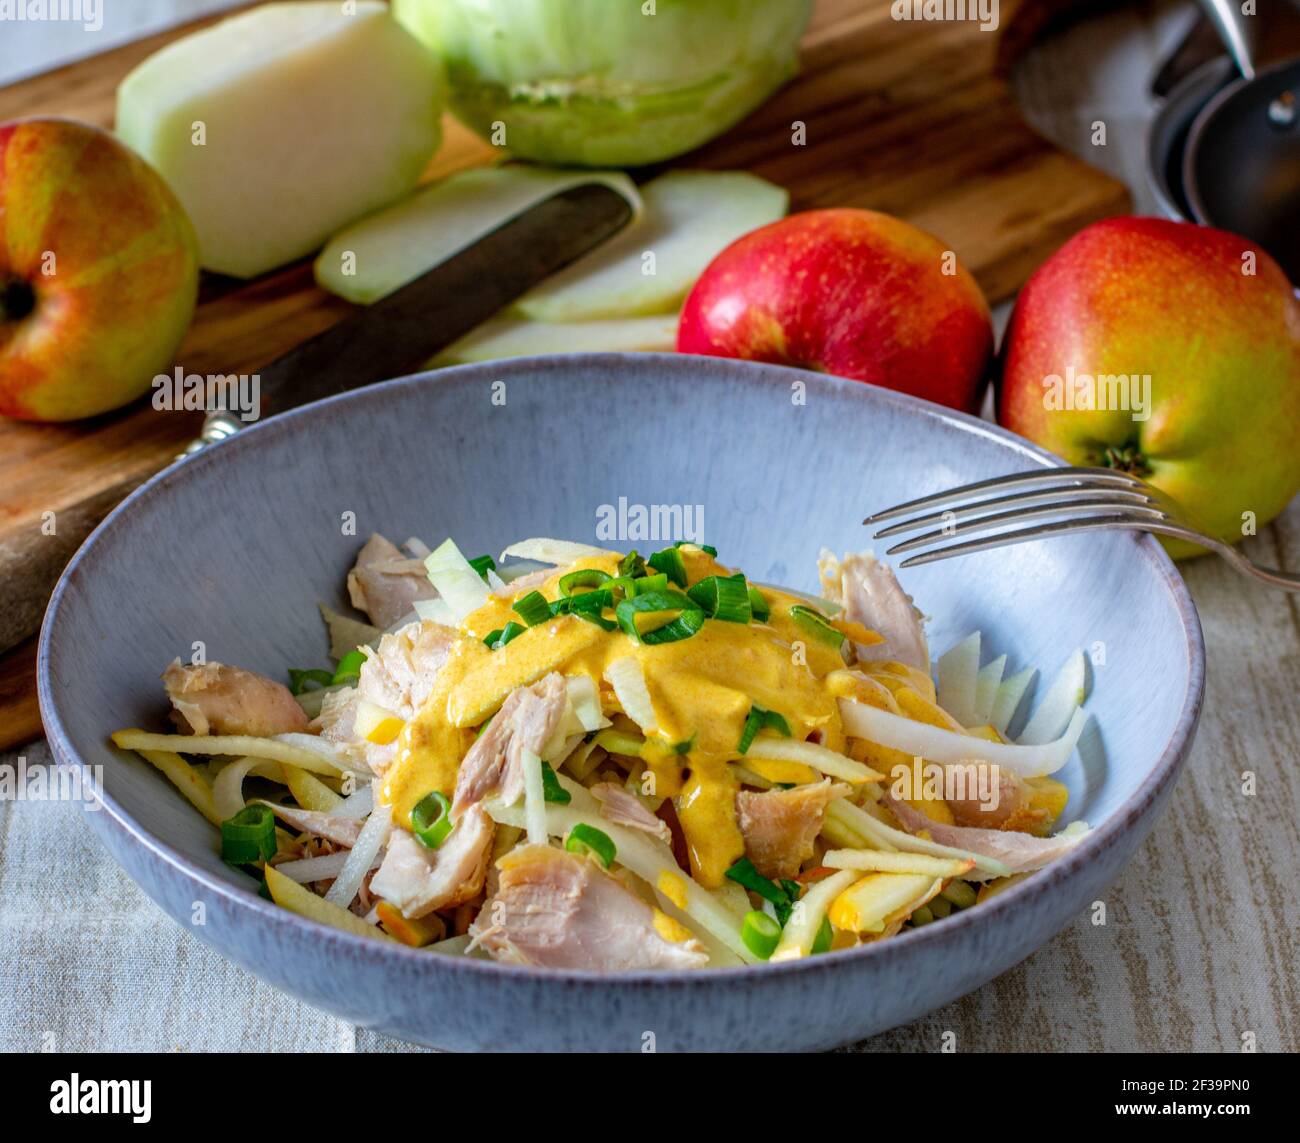 Hausgemachter Hühnersalat mit rohen Äpfeln und Kohlrabi-Streifen serviert Mit einer leckeren Currysauce auf dem Küchentisch Stockfoto